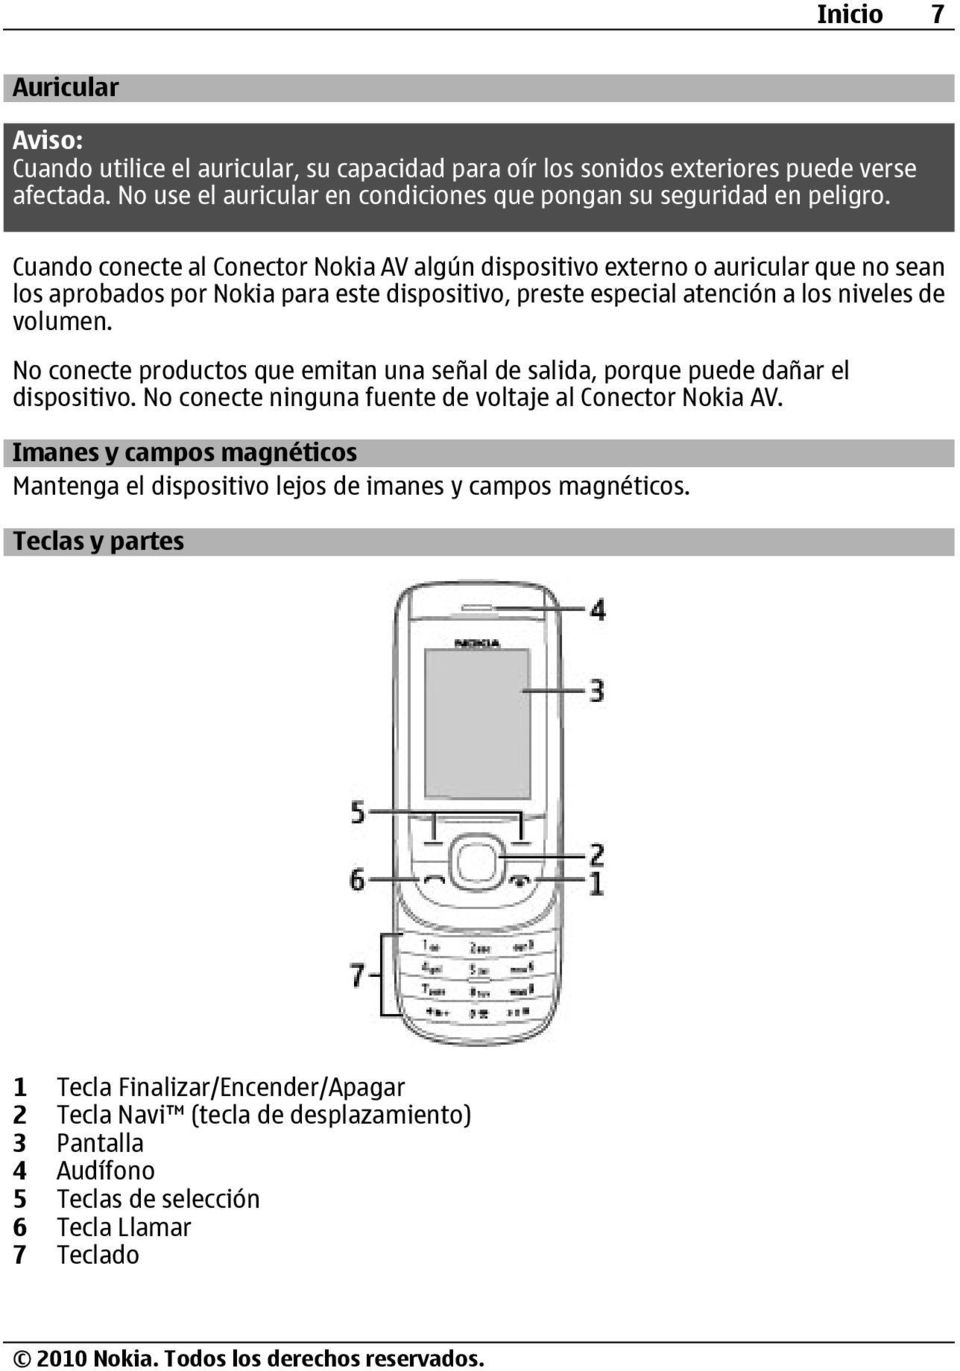 No conecte productos que emitan una señal de salida, porque puede dañar el dispositivo. No conecte ninguna fuente de voltaje al Conector Nokia AV.